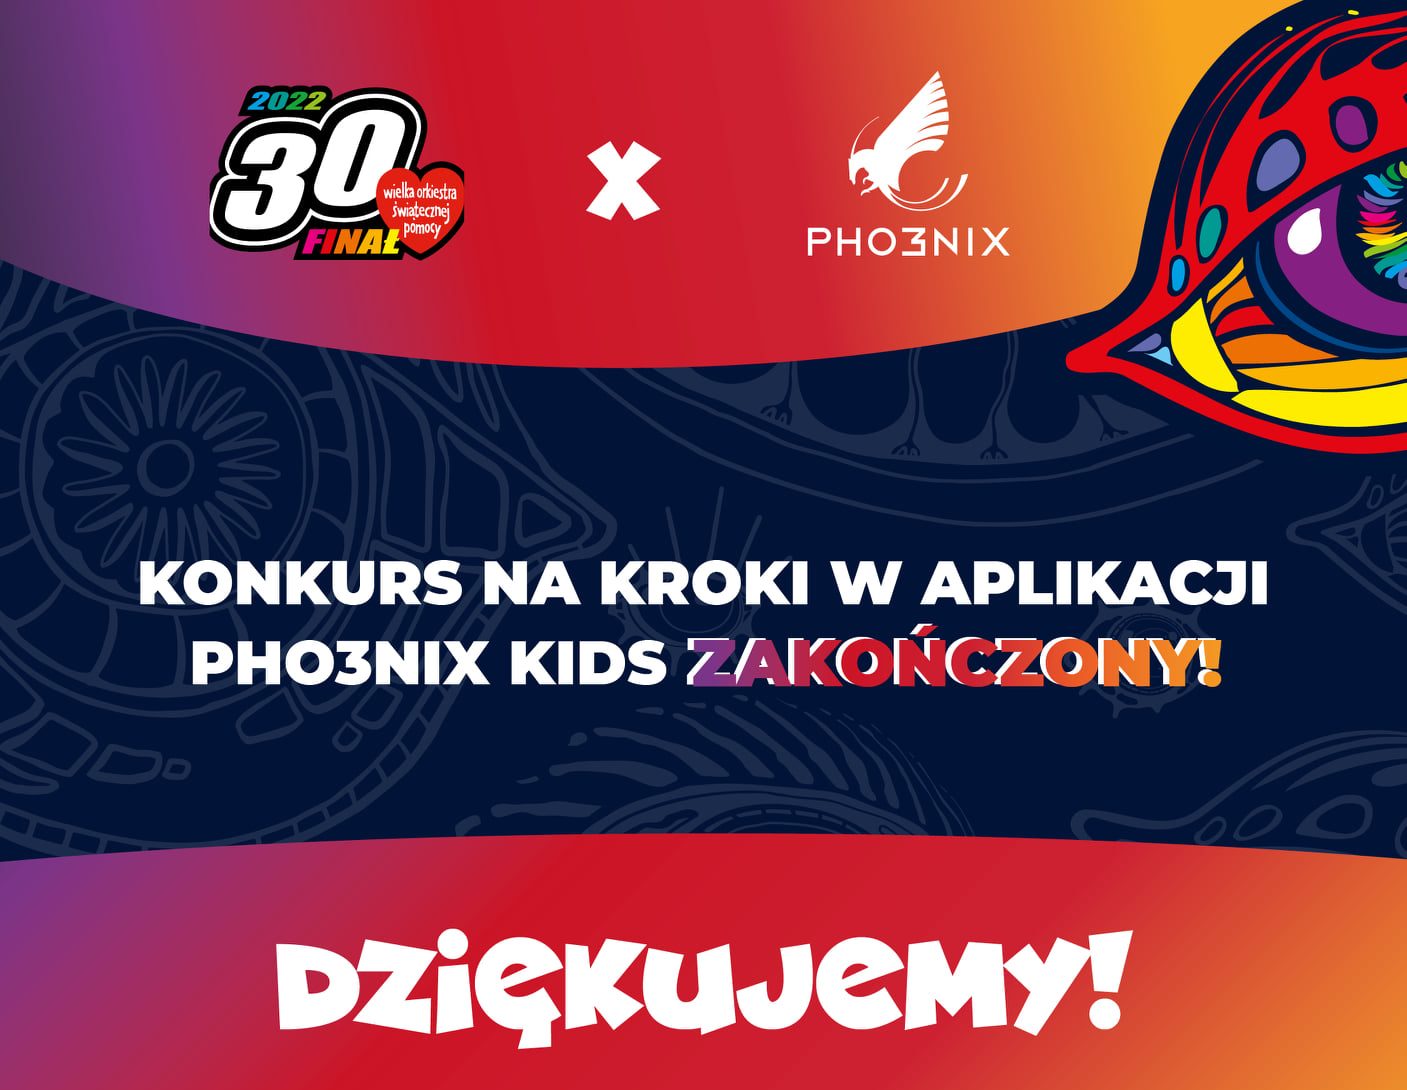 Konkurs międzyszkolny w aplikacji Pho3nix Kids zakończony!